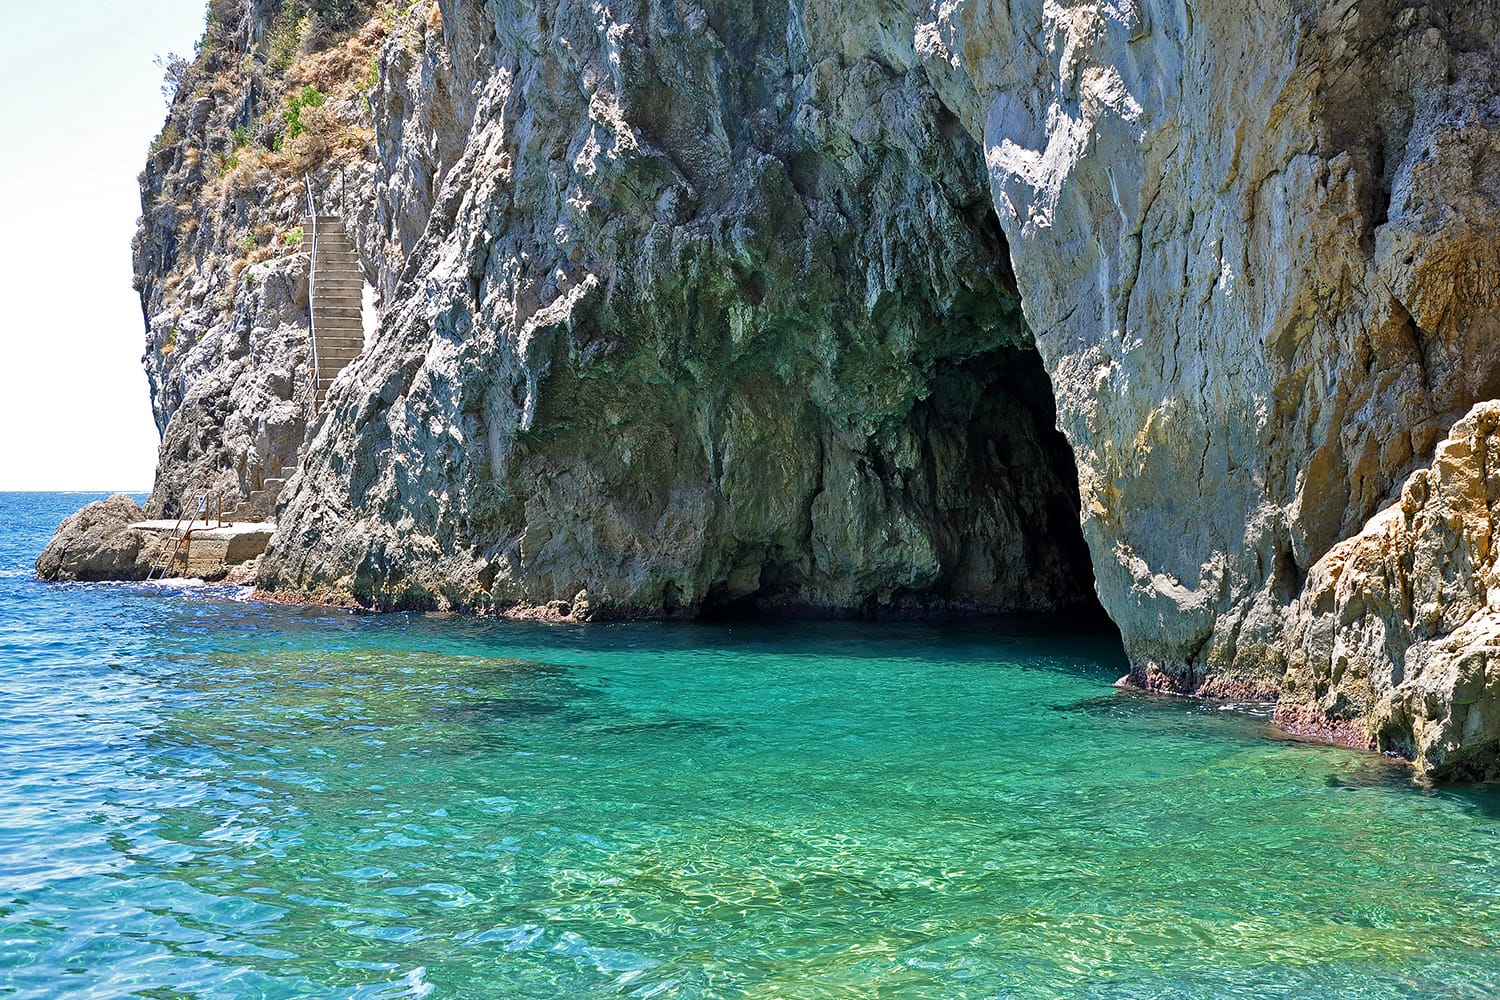 Green grotto at the Amalfi Coast, Italy